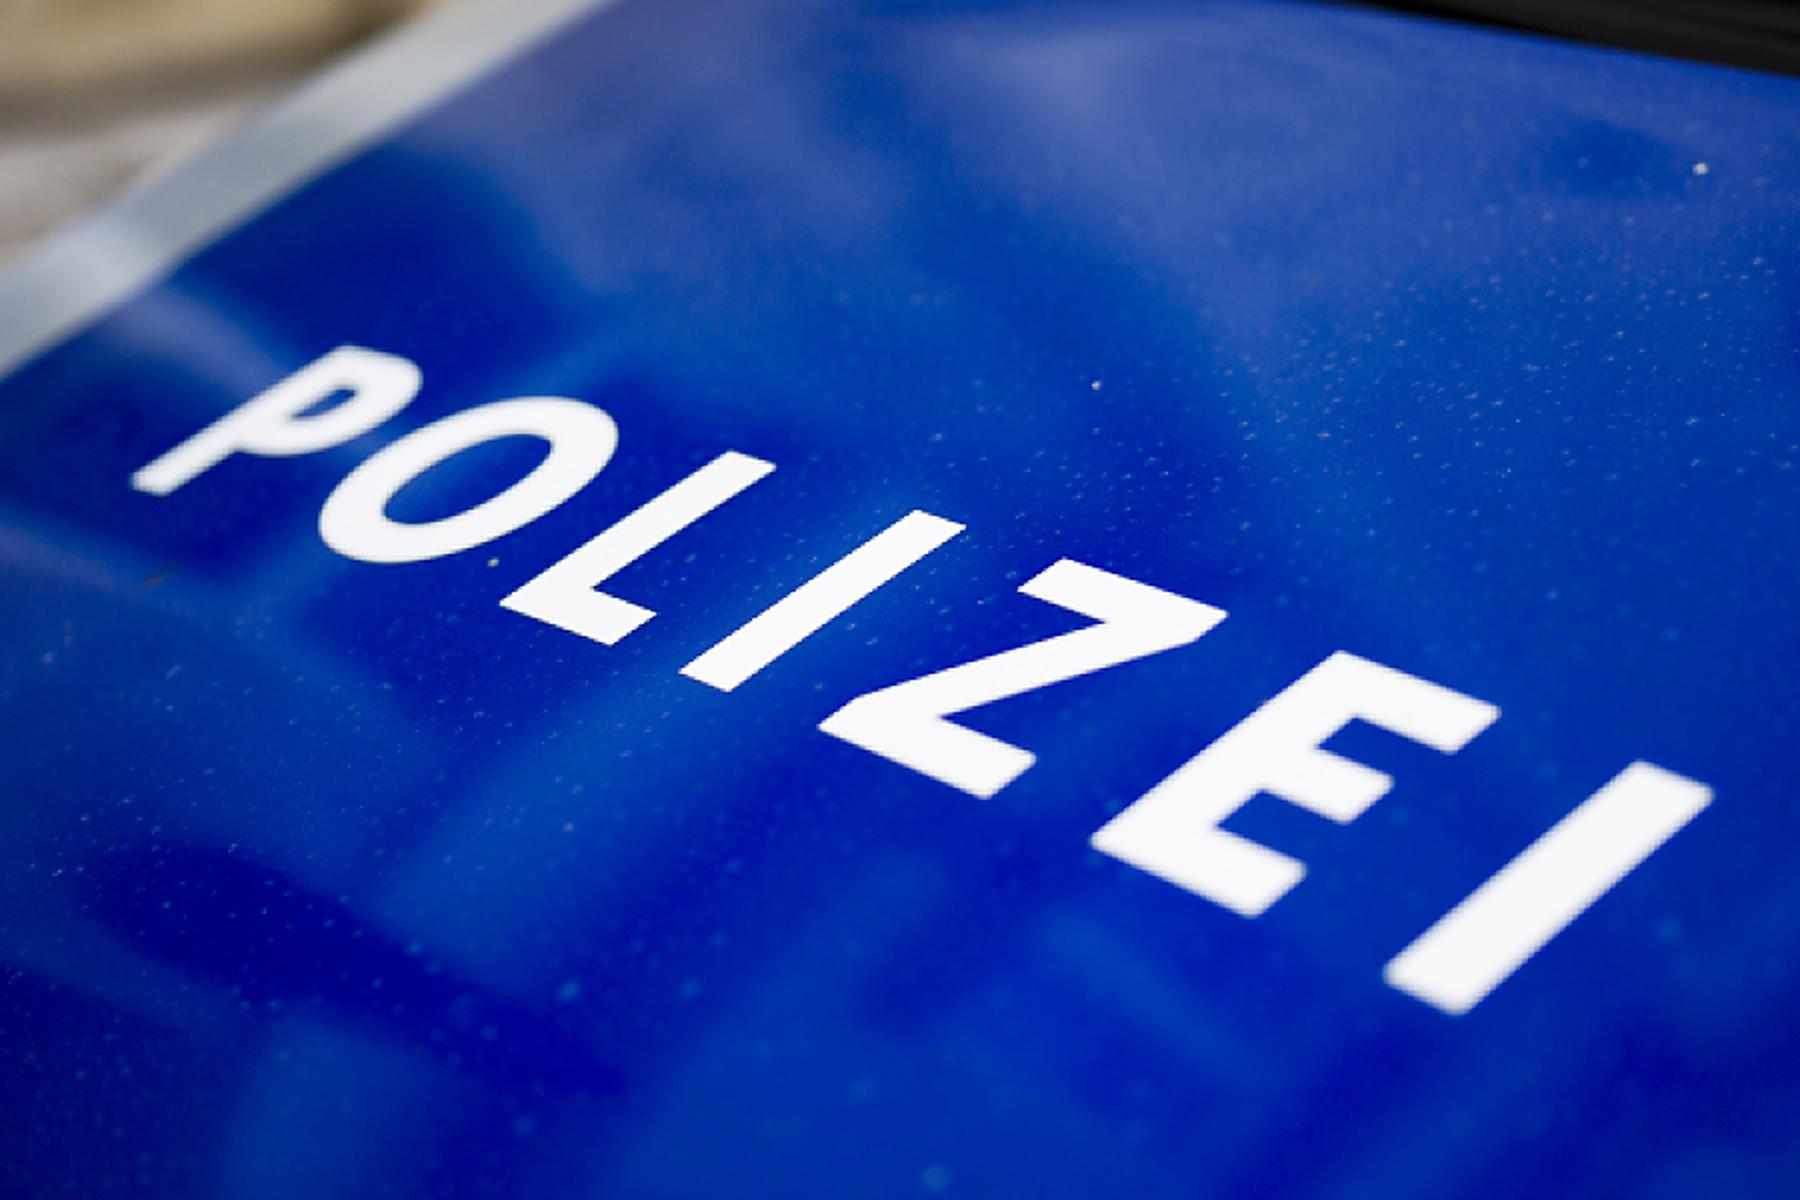 Wien: Tote Frau in Wien - Attacke auf Polizisten bei Festnahme